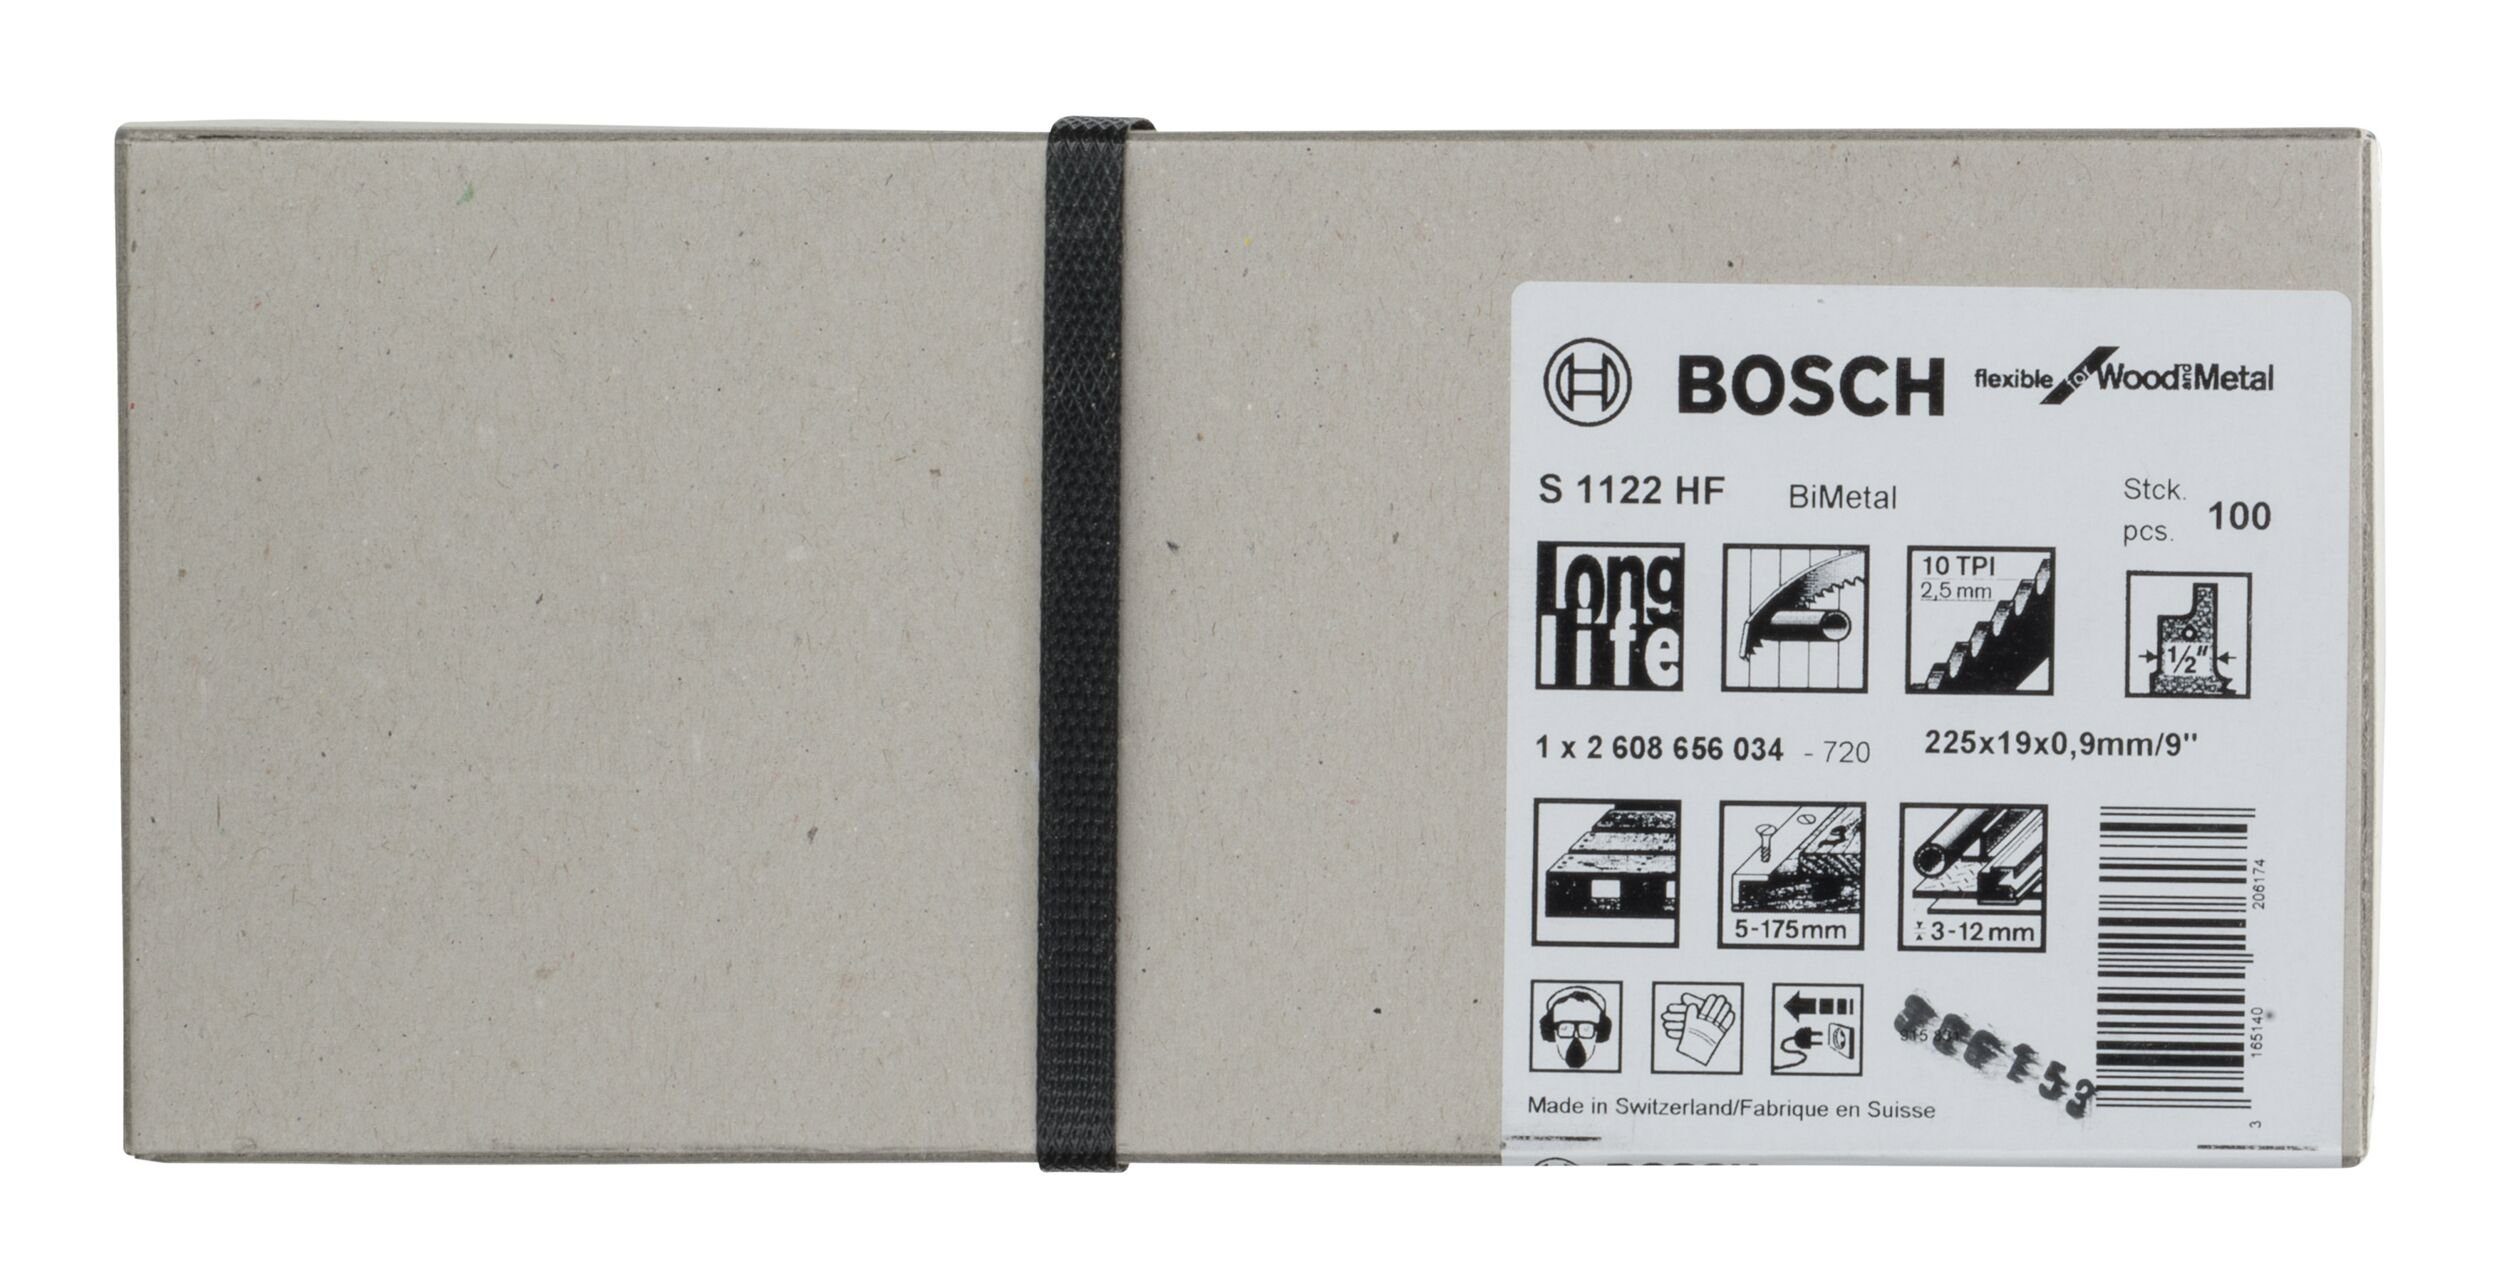 BOSCH Säbelsägeblatt (100 Stück), S and for - Flexible Wood Metal 1122 HF 100er-Pack